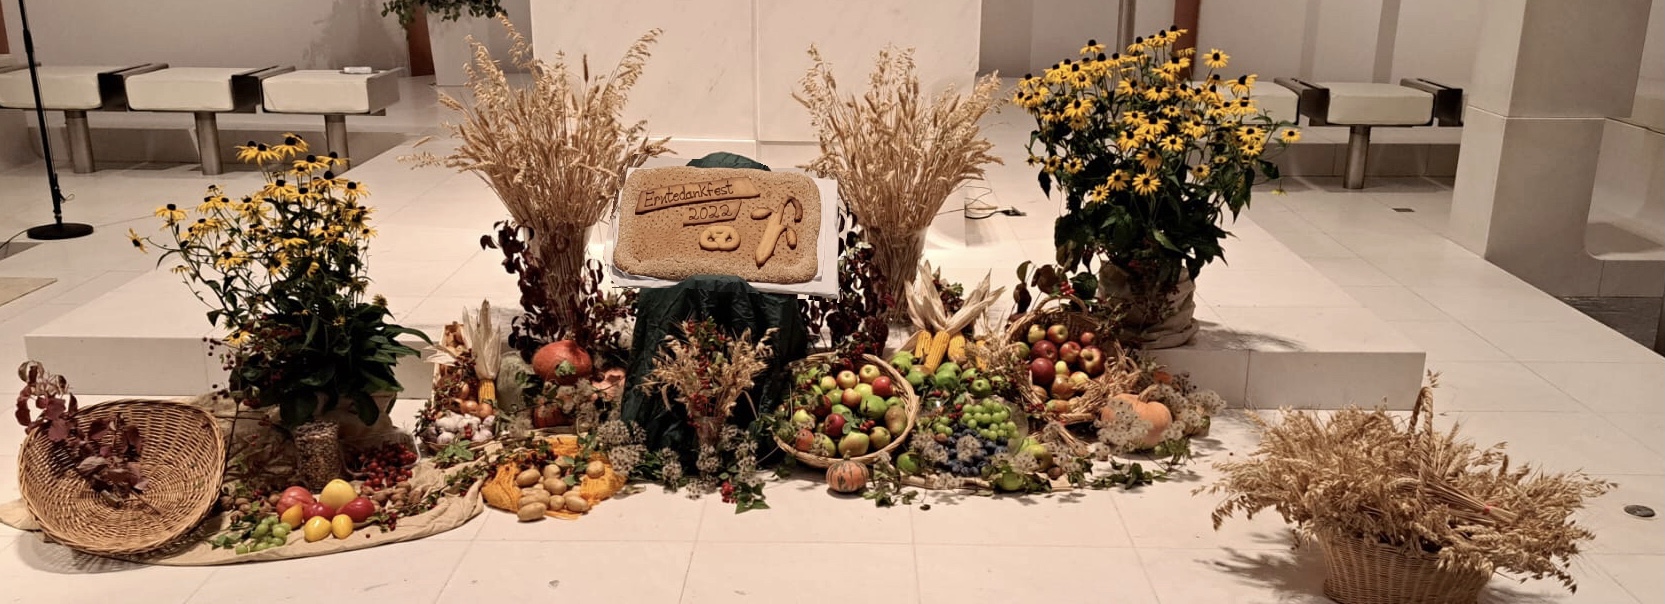 Prachtvoller Obst-, Gemüse- und Blumenschmuck im Altarraum (c) Waldemar Krenz